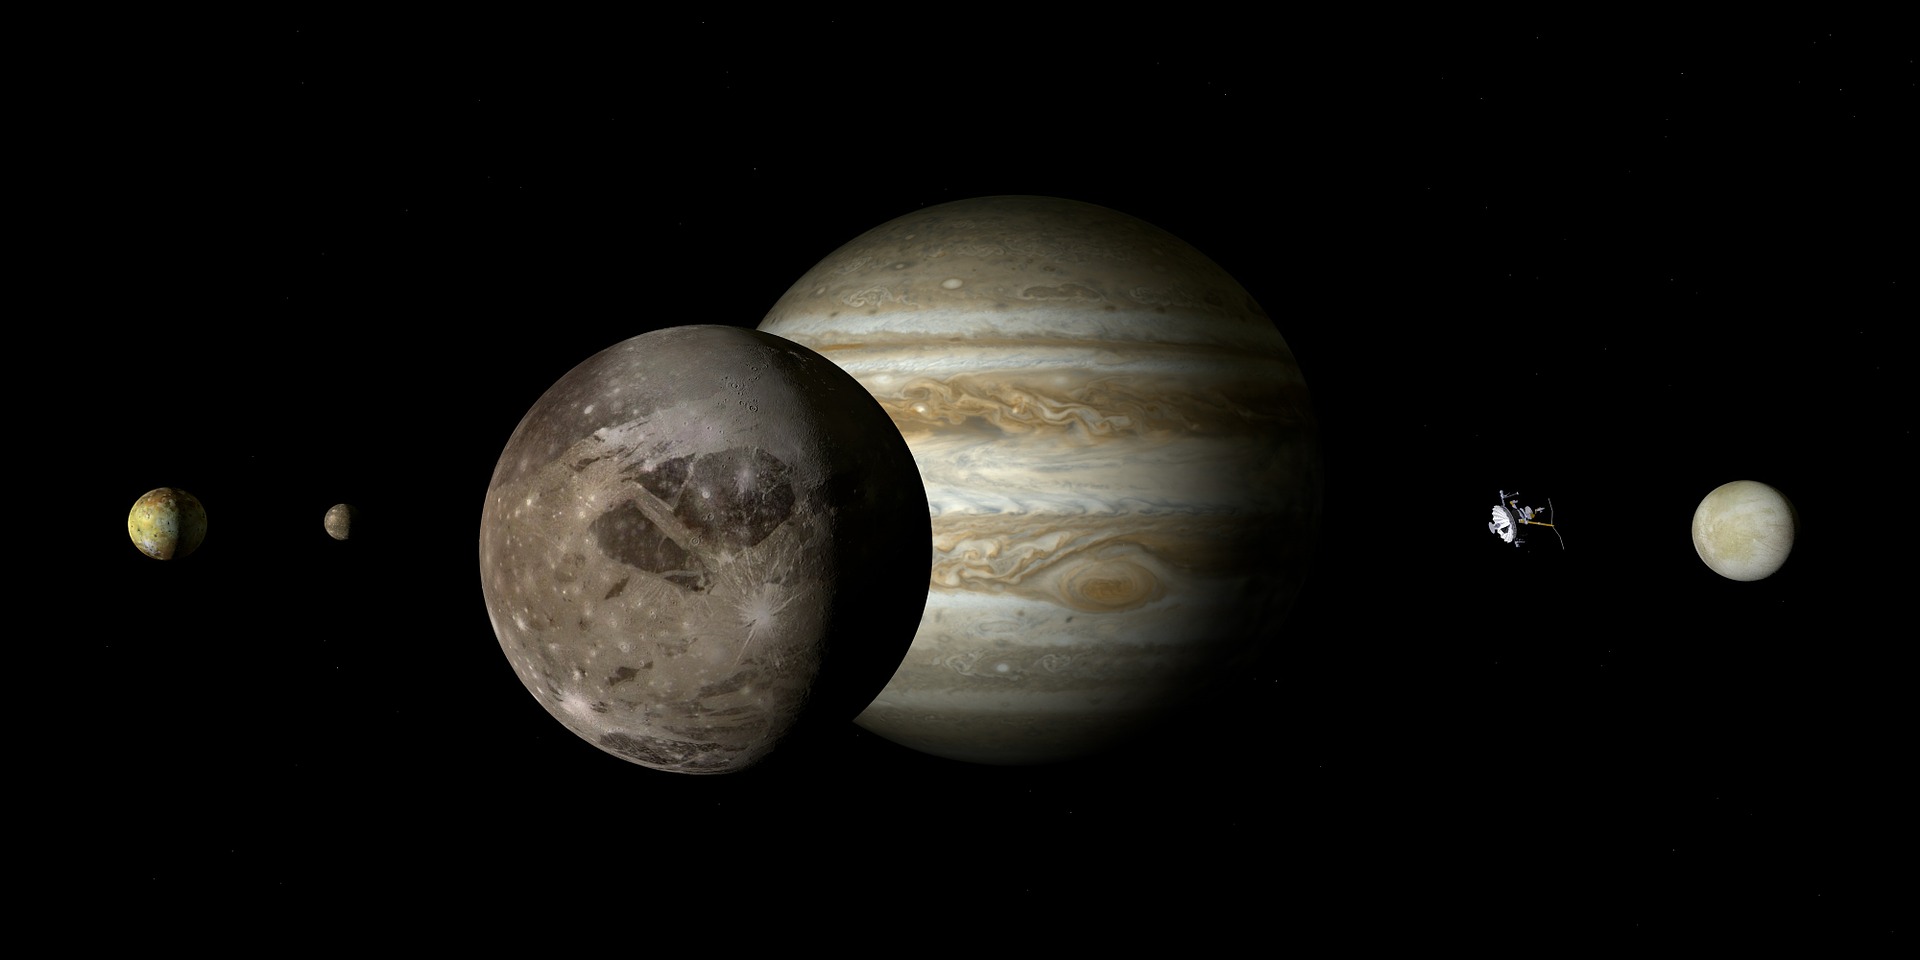 De la vapeur d'eau a été détectée dans l'atmosphère de Ganymède, l'une des lunes de Jupiter